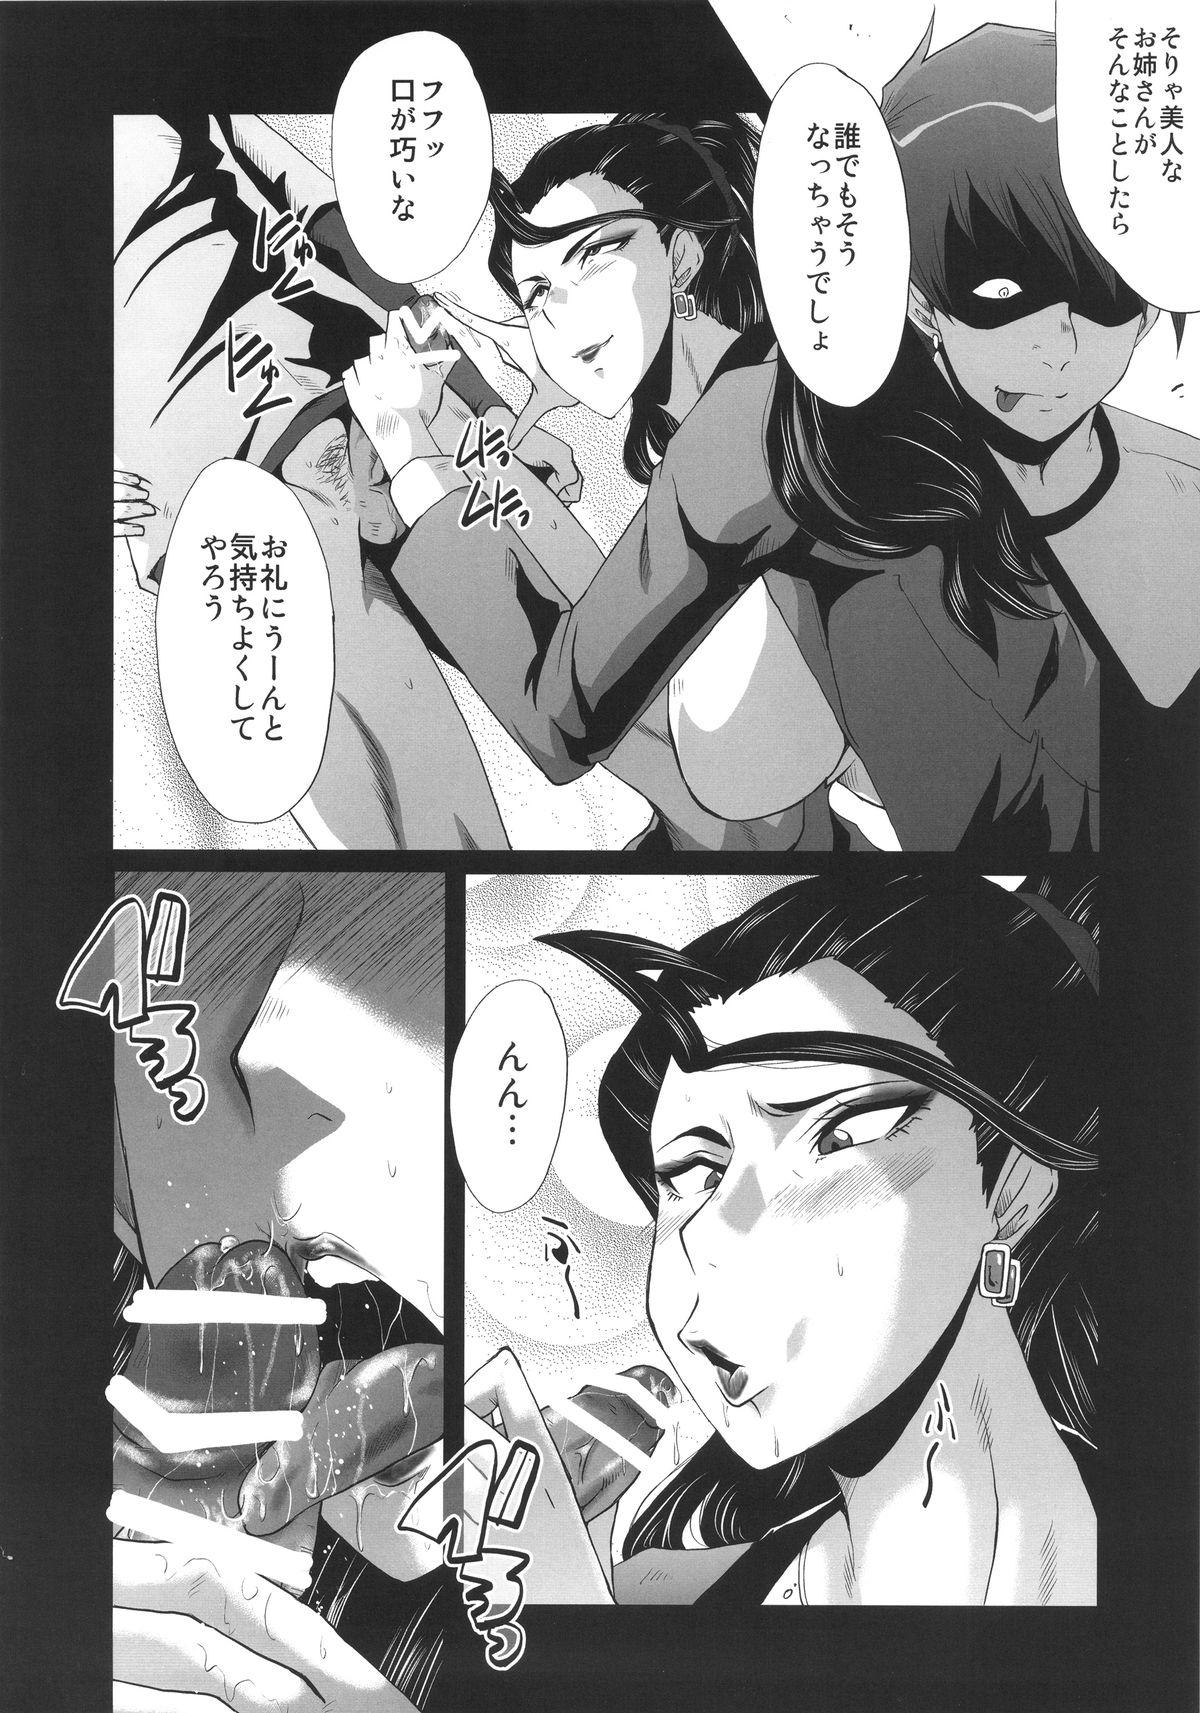 Hot Milf Urabambi 52 Injuku no Kyouen - The idolmaster Pareja - Page 8